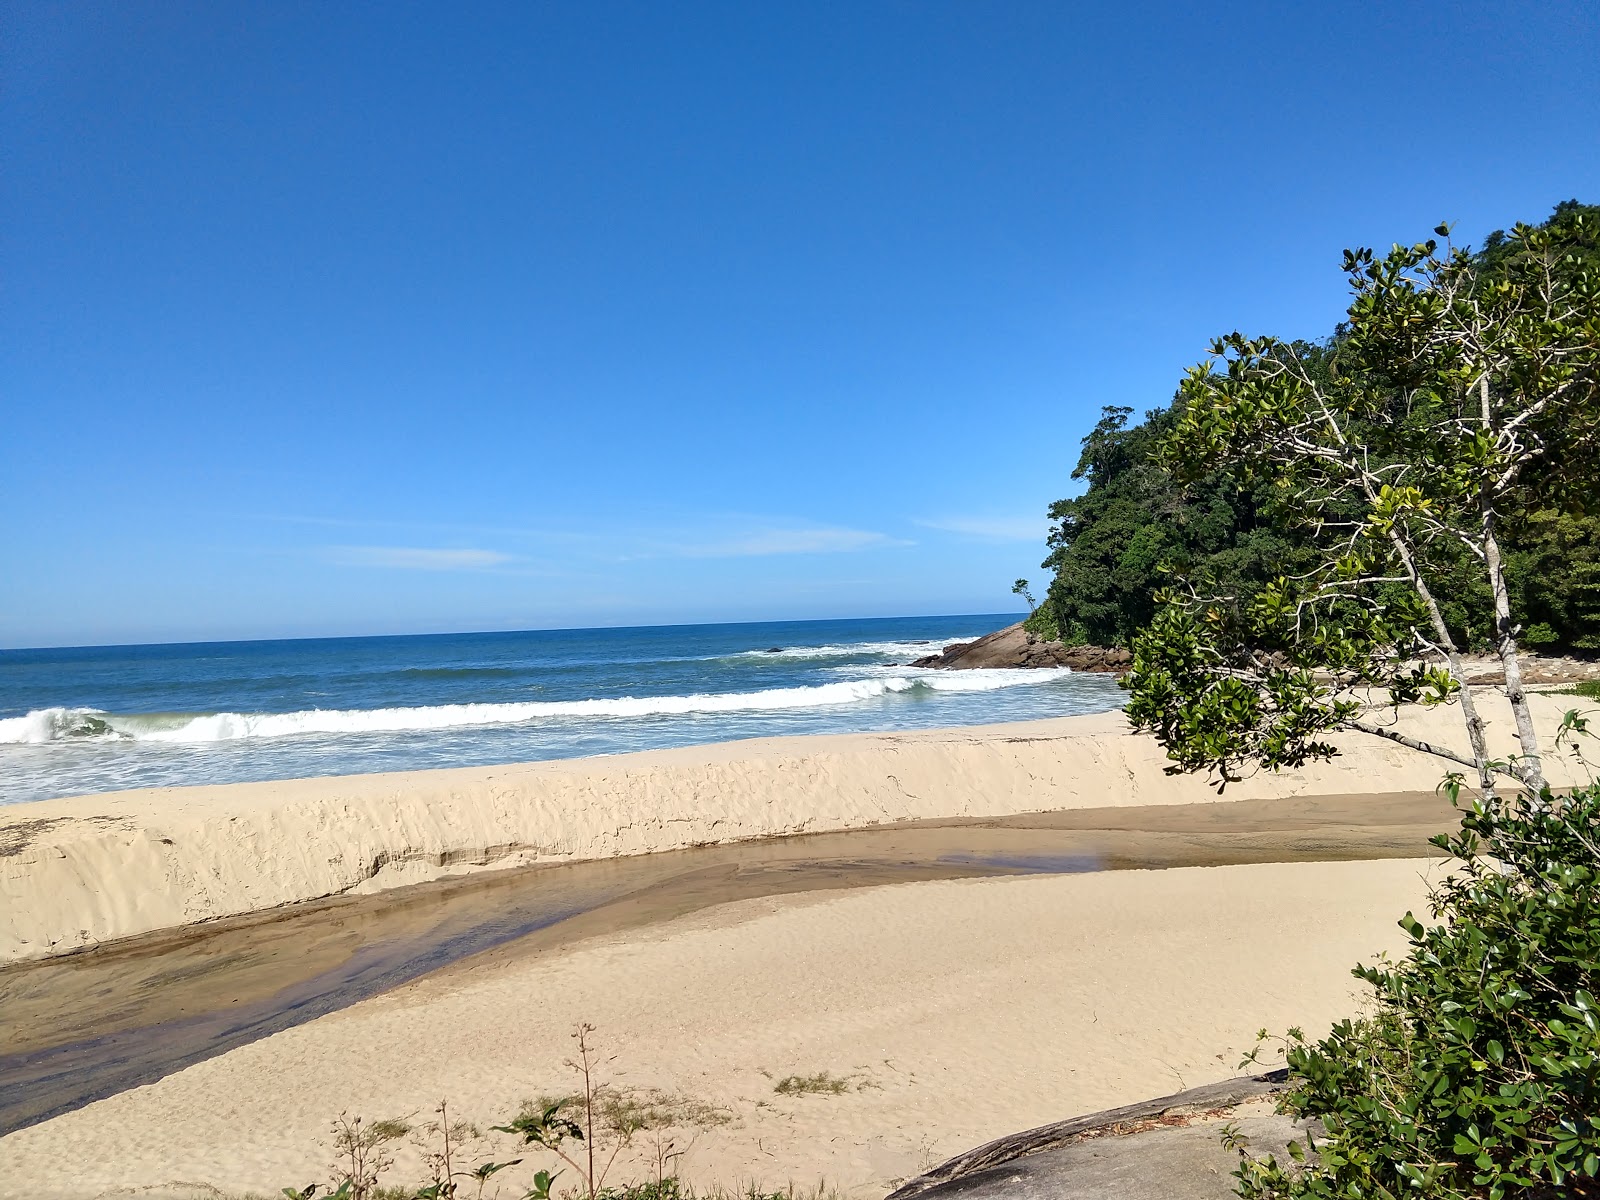 Praia da Meia Lua'in fotoğrafı doğal alan içinde bulunmaktadır